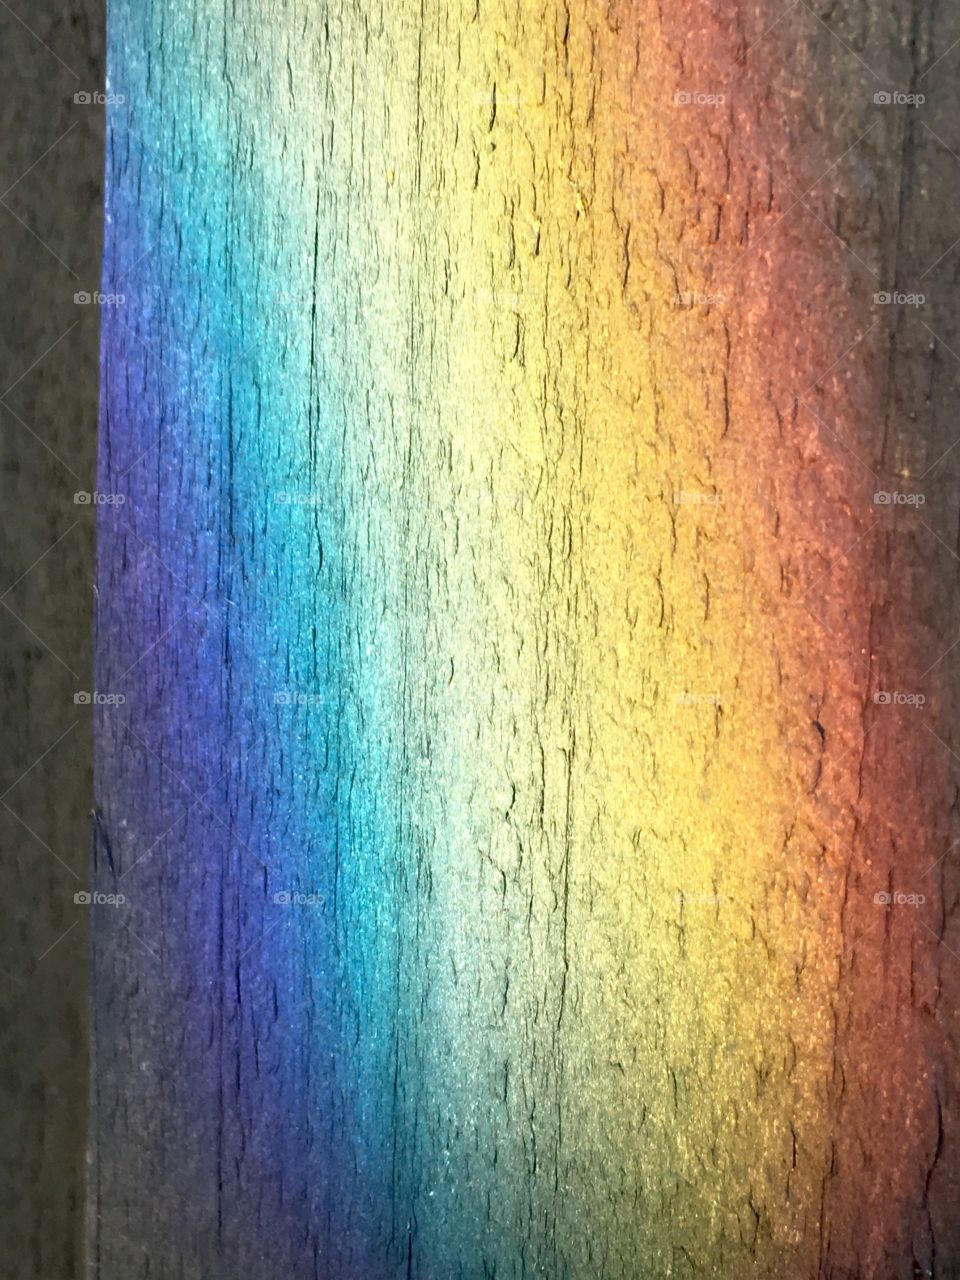 Rainbow on fence